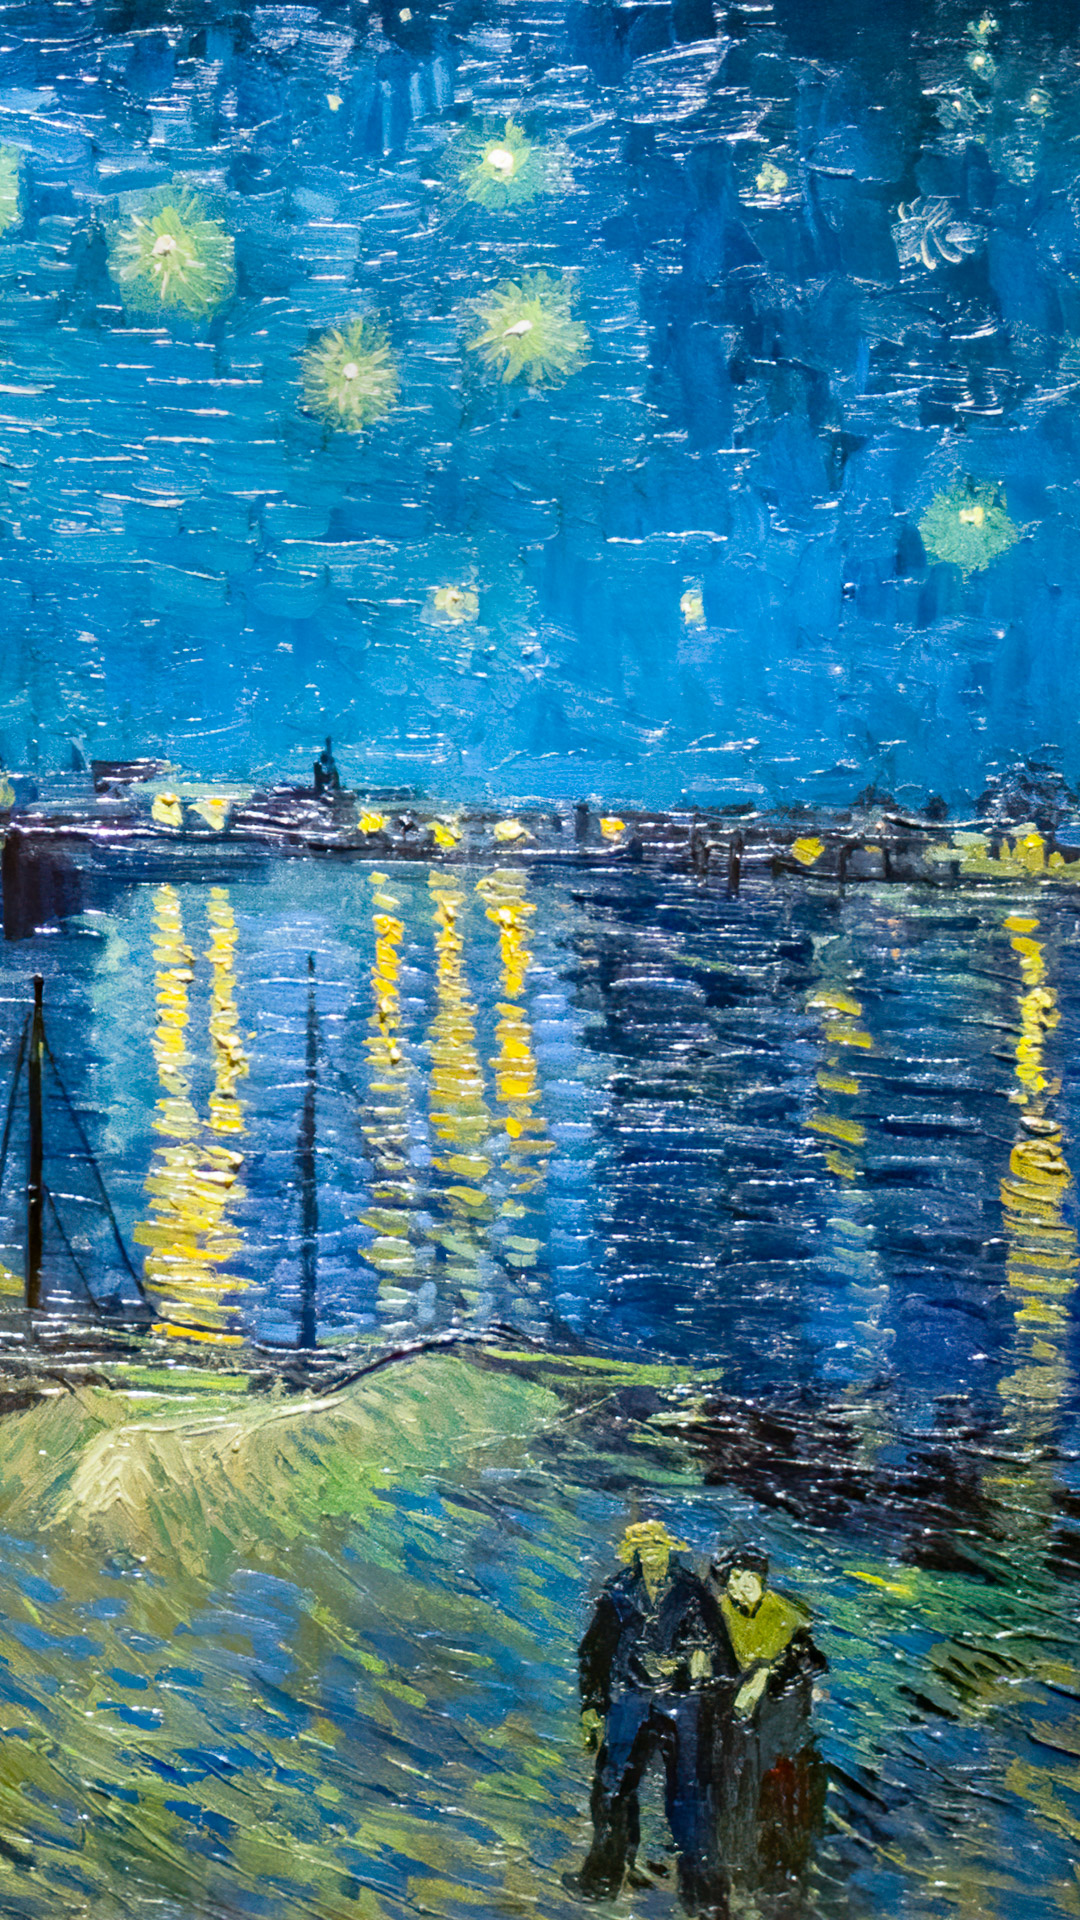 Immergez-vous dans le monde de l'art avec notre téléchargement gratuit de fond d'écran pour téléphone, présentant la célèbre peinture de Van Gogh, La Nuit étoilée, un chef-d'œuvre du post-impressionnisme.